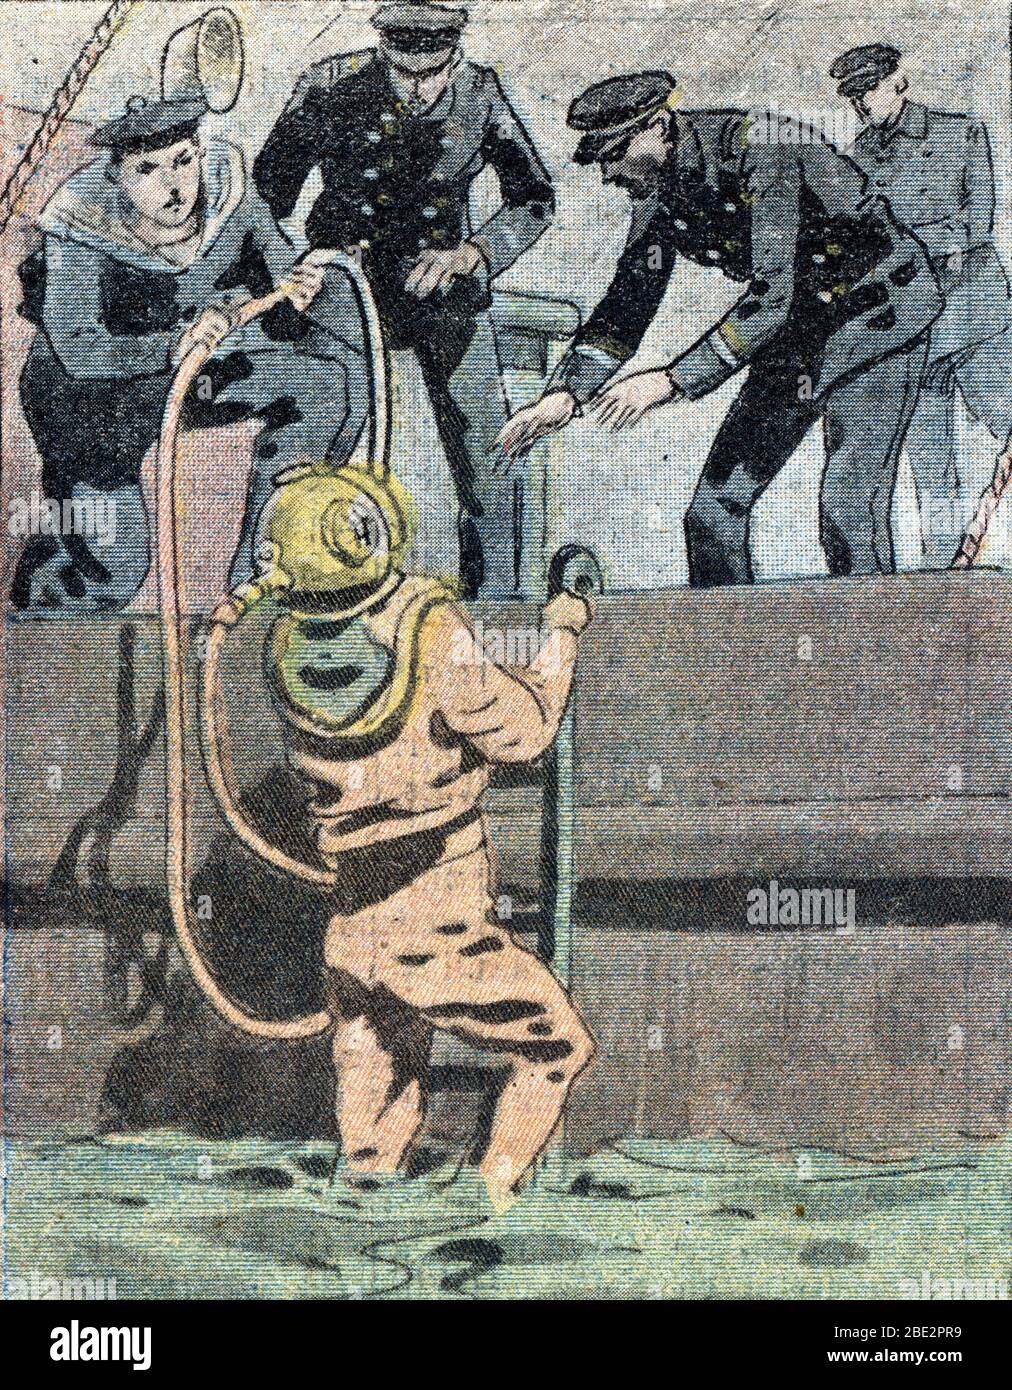 'Plongeur scaphandrier examinant la coque du navire Saint-Louis apres le nauflage du sous-marin francais le 'ventemiaire' au large des cotes du Cotent Stockfoto